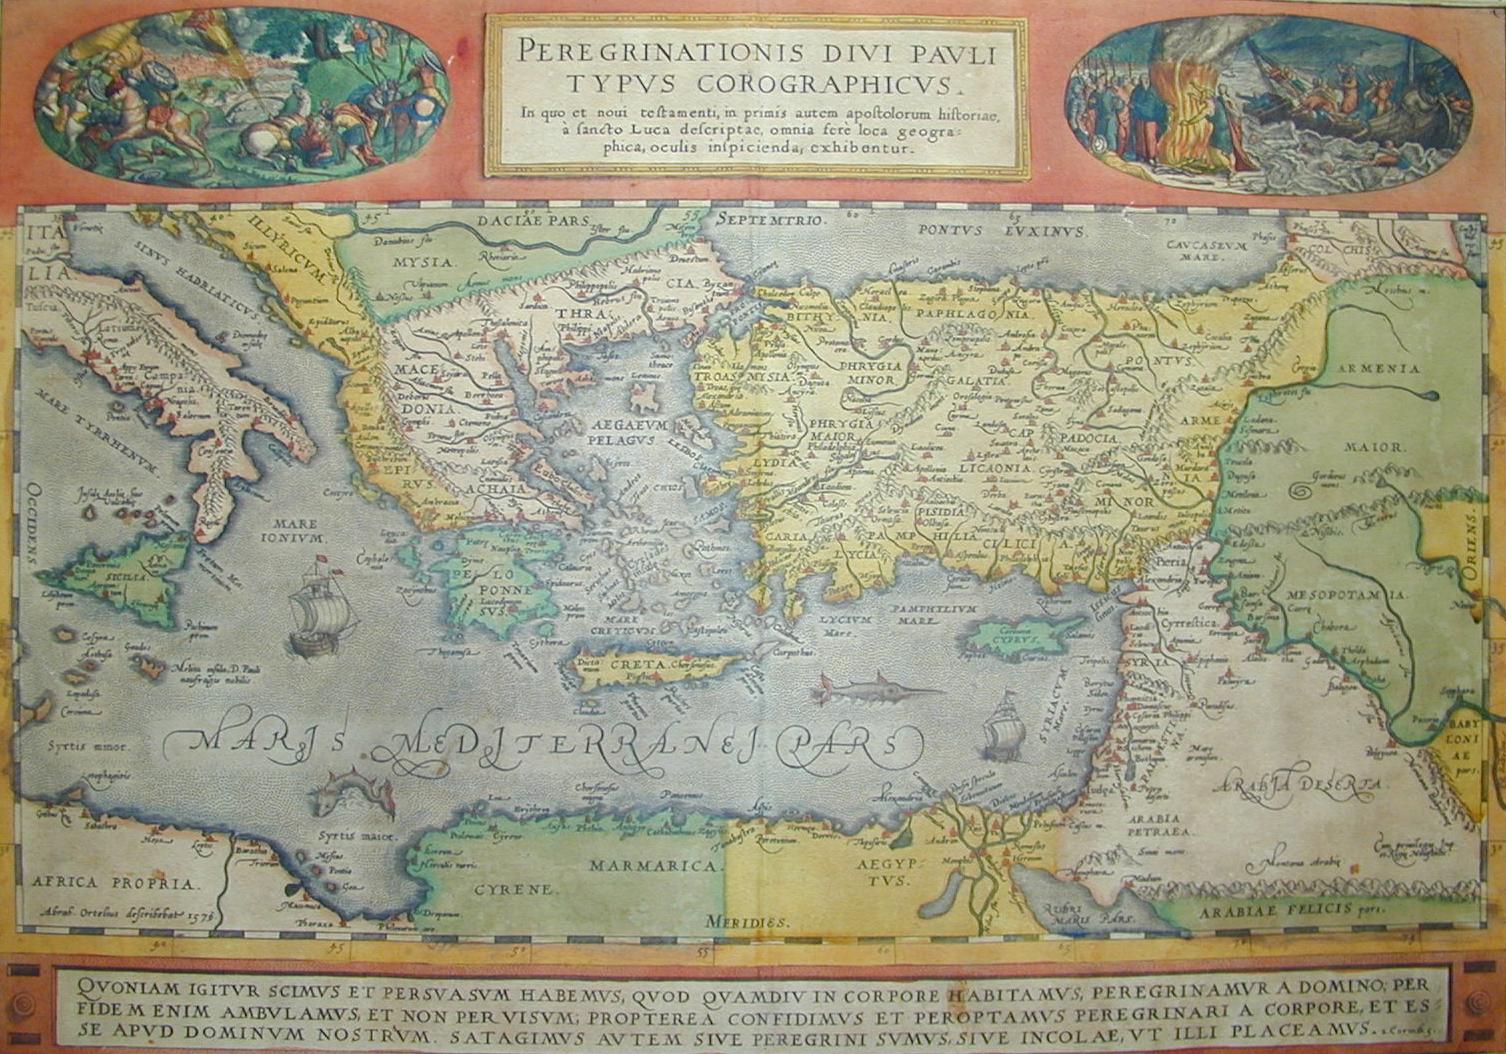 Il Pellegrinaggio del Divino Paolo 1579